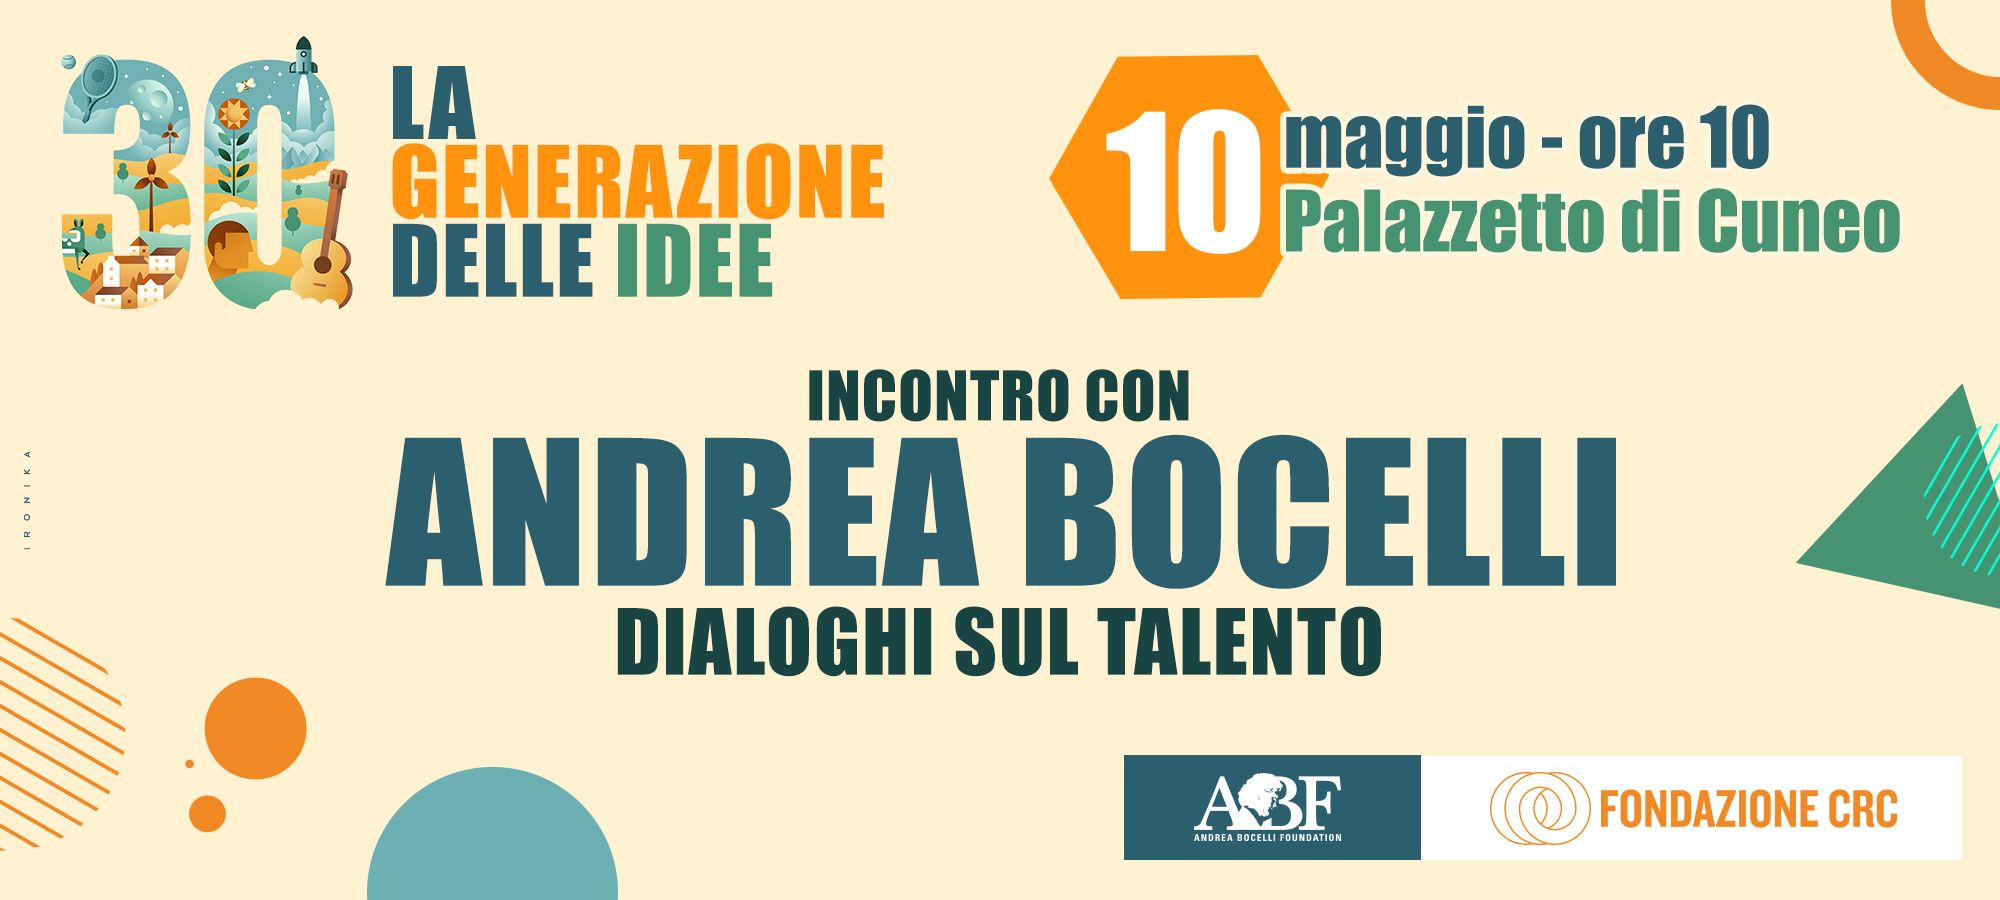 La generazione delle idee. Dialoghi sul talento insieme ad Andrea Bocelli